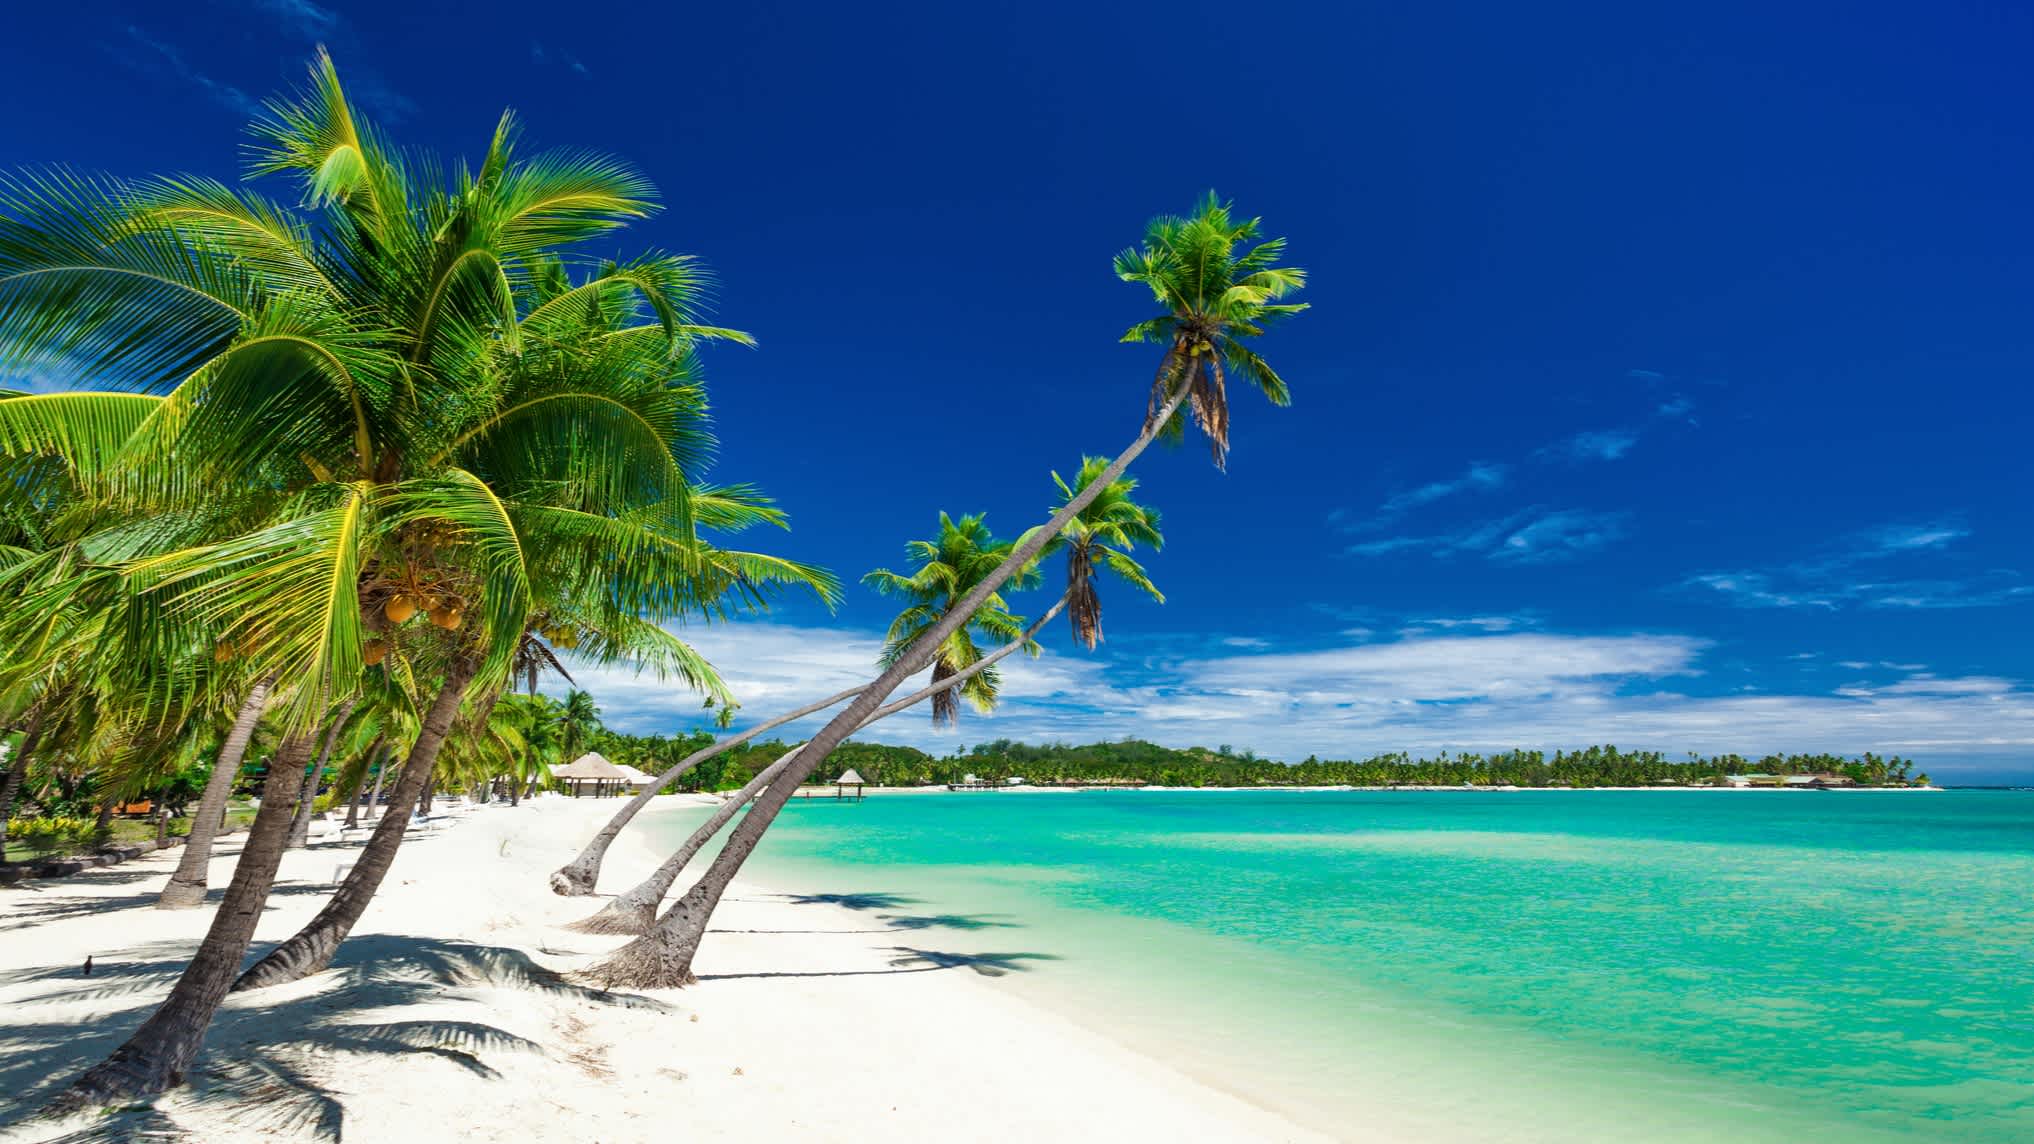 Palmen am Strand und türkisblaues Meer